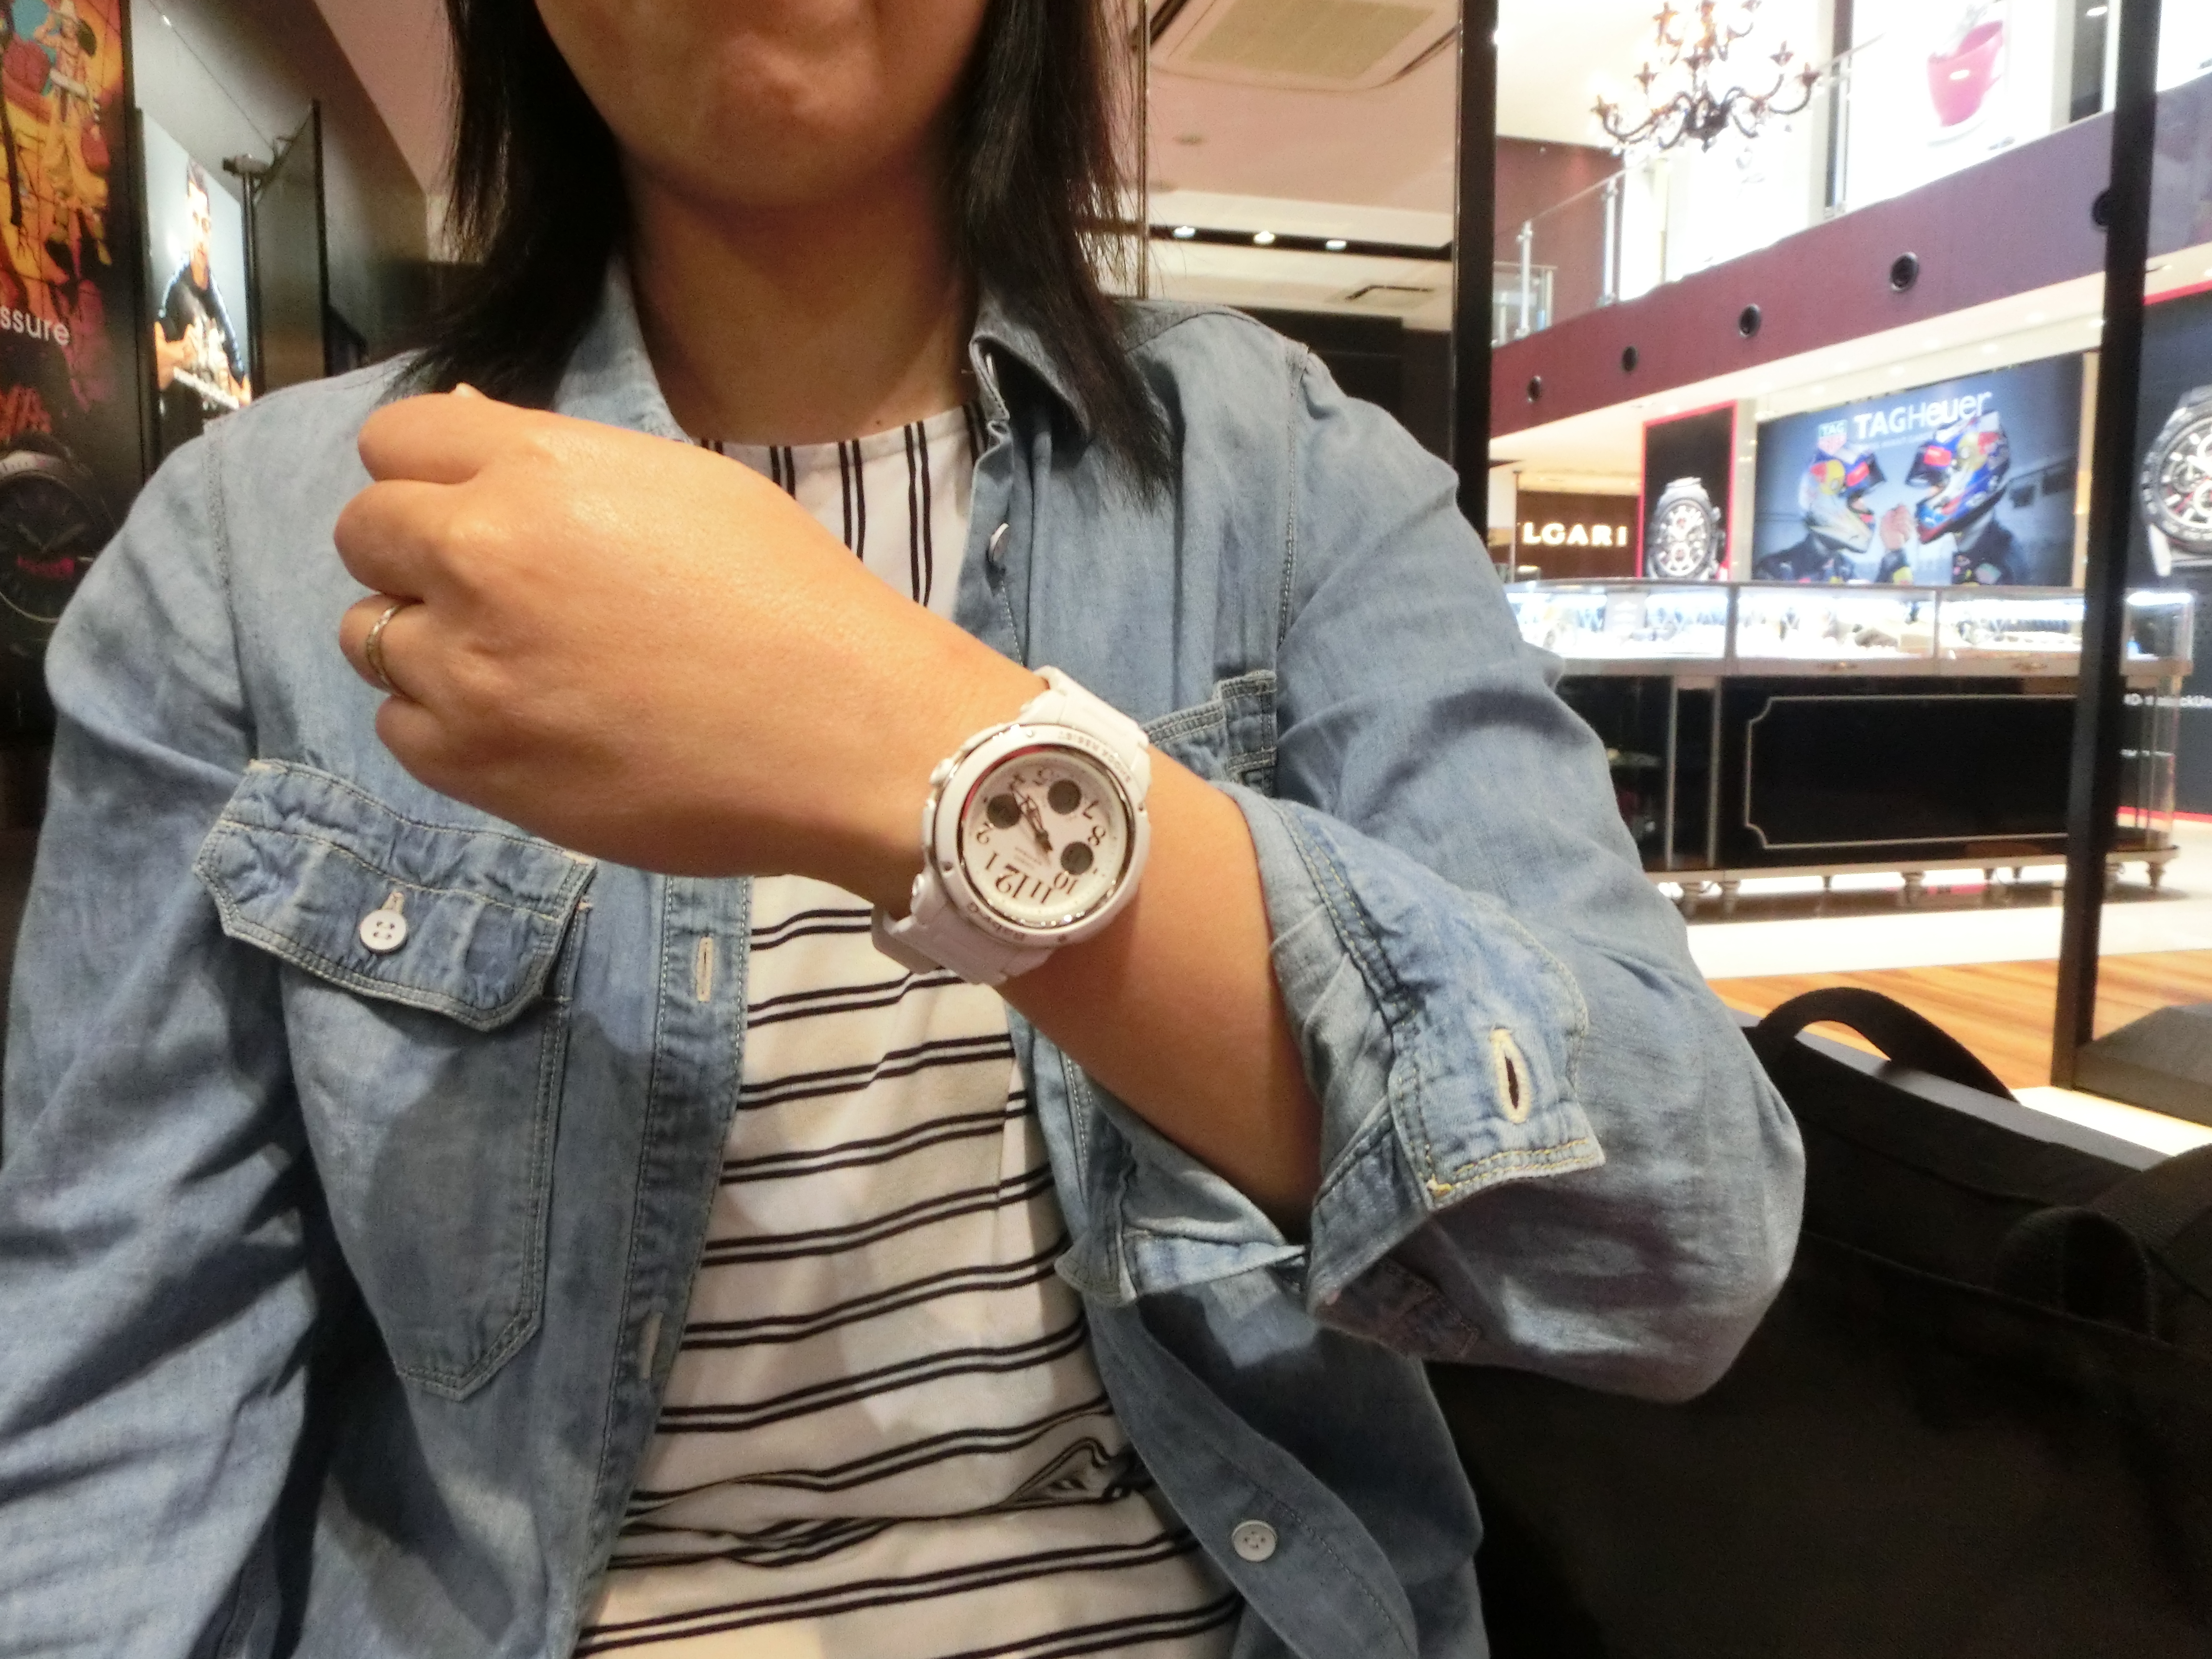 ホワイト BGA-150EF-7BJF 腕時計 国内正規品 おしゃれ かわいい アスレジャー ネットDE腕時計わっしょい村 - 通販 -  PayPayモール Baby-G ベビーG CASIO カシオ アナデジ 白 ホワイト レディース モジュール